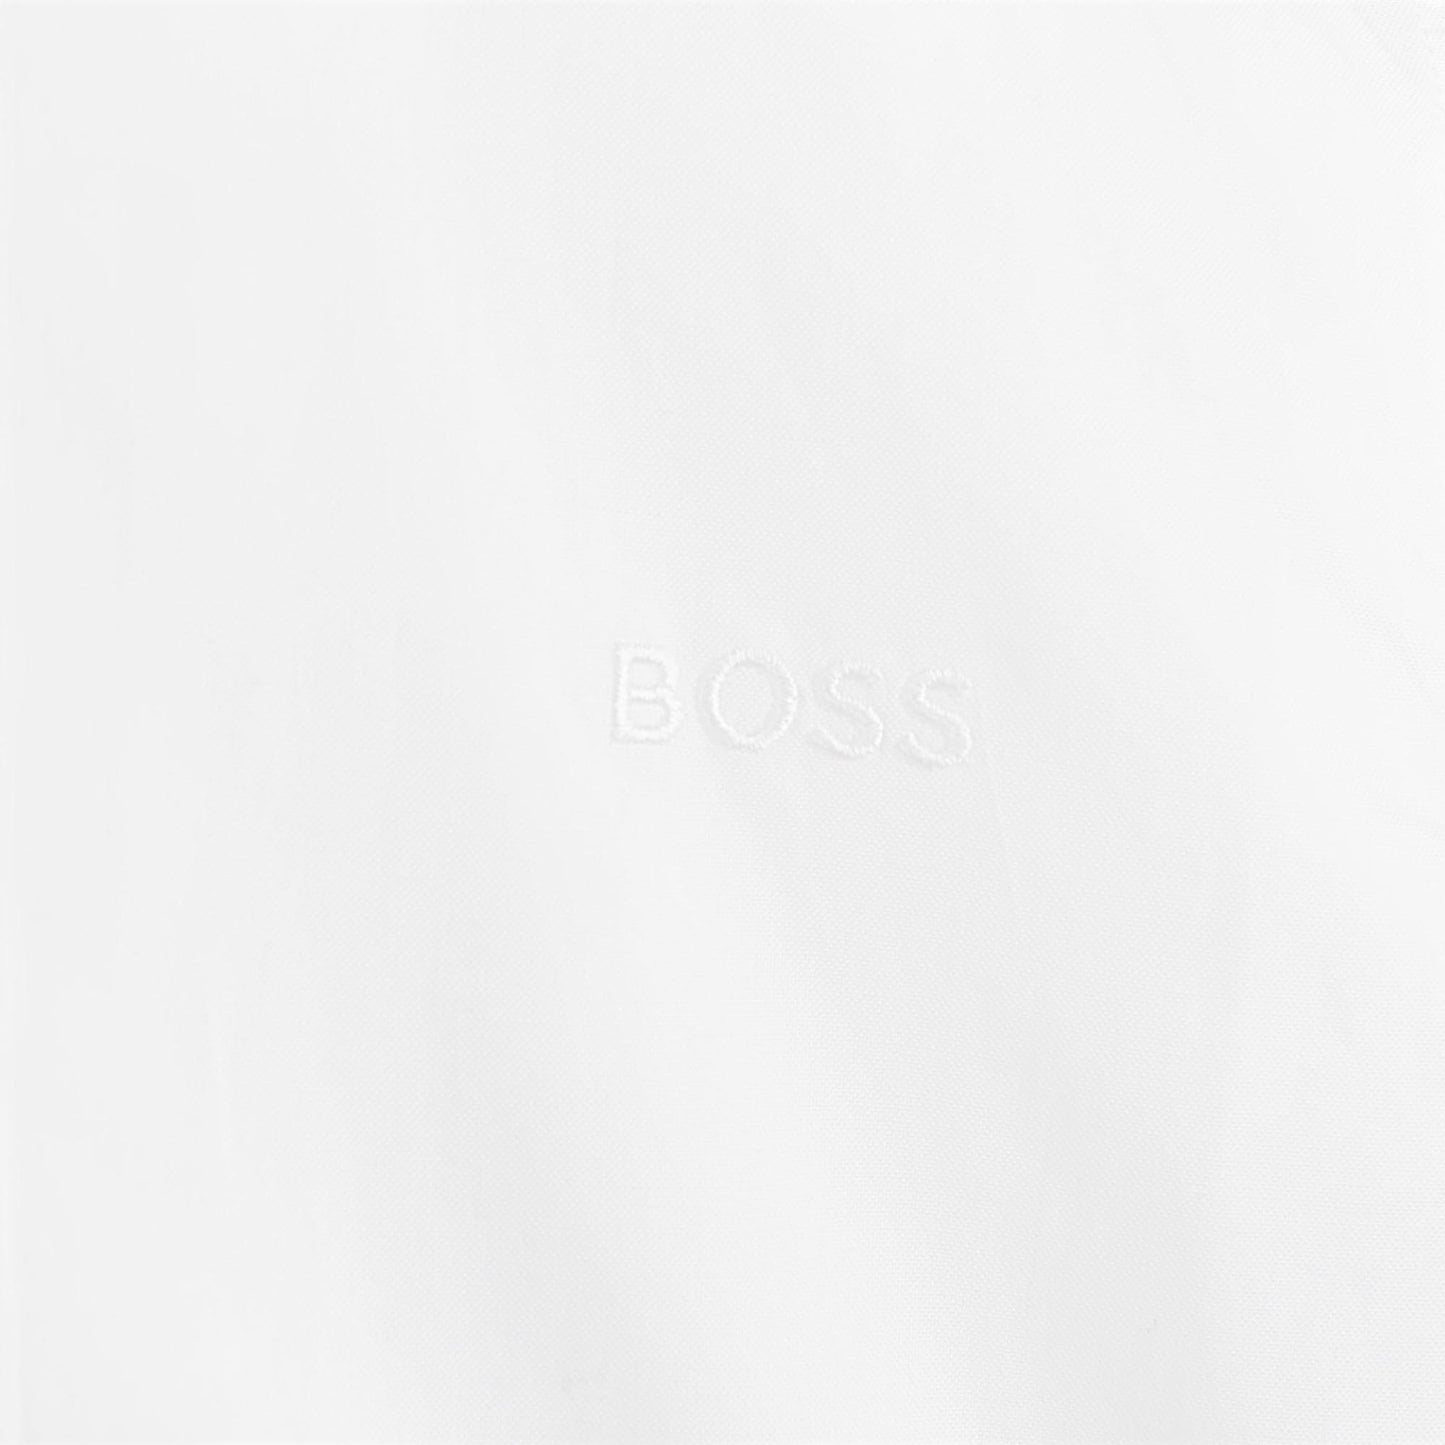 Hugo Boss Boys Long Sleeved Slim Fit Dress Shirt _White J25O35-10P